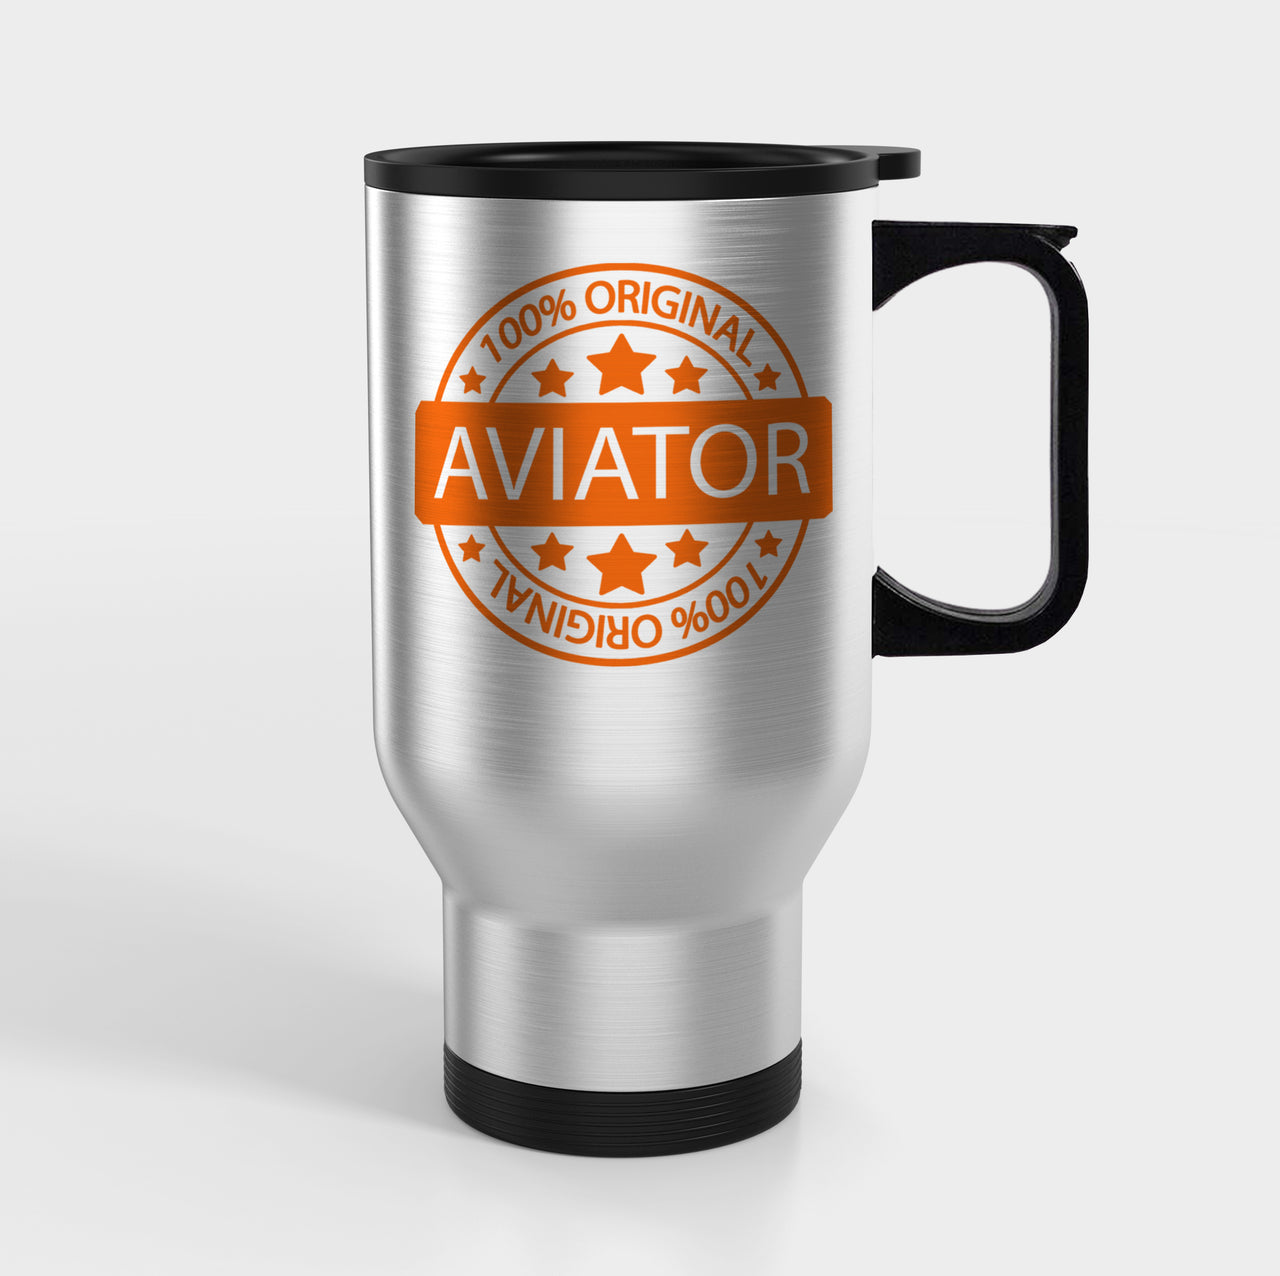 %100 Original Aviator Designed Travel Mugs (With Holder)